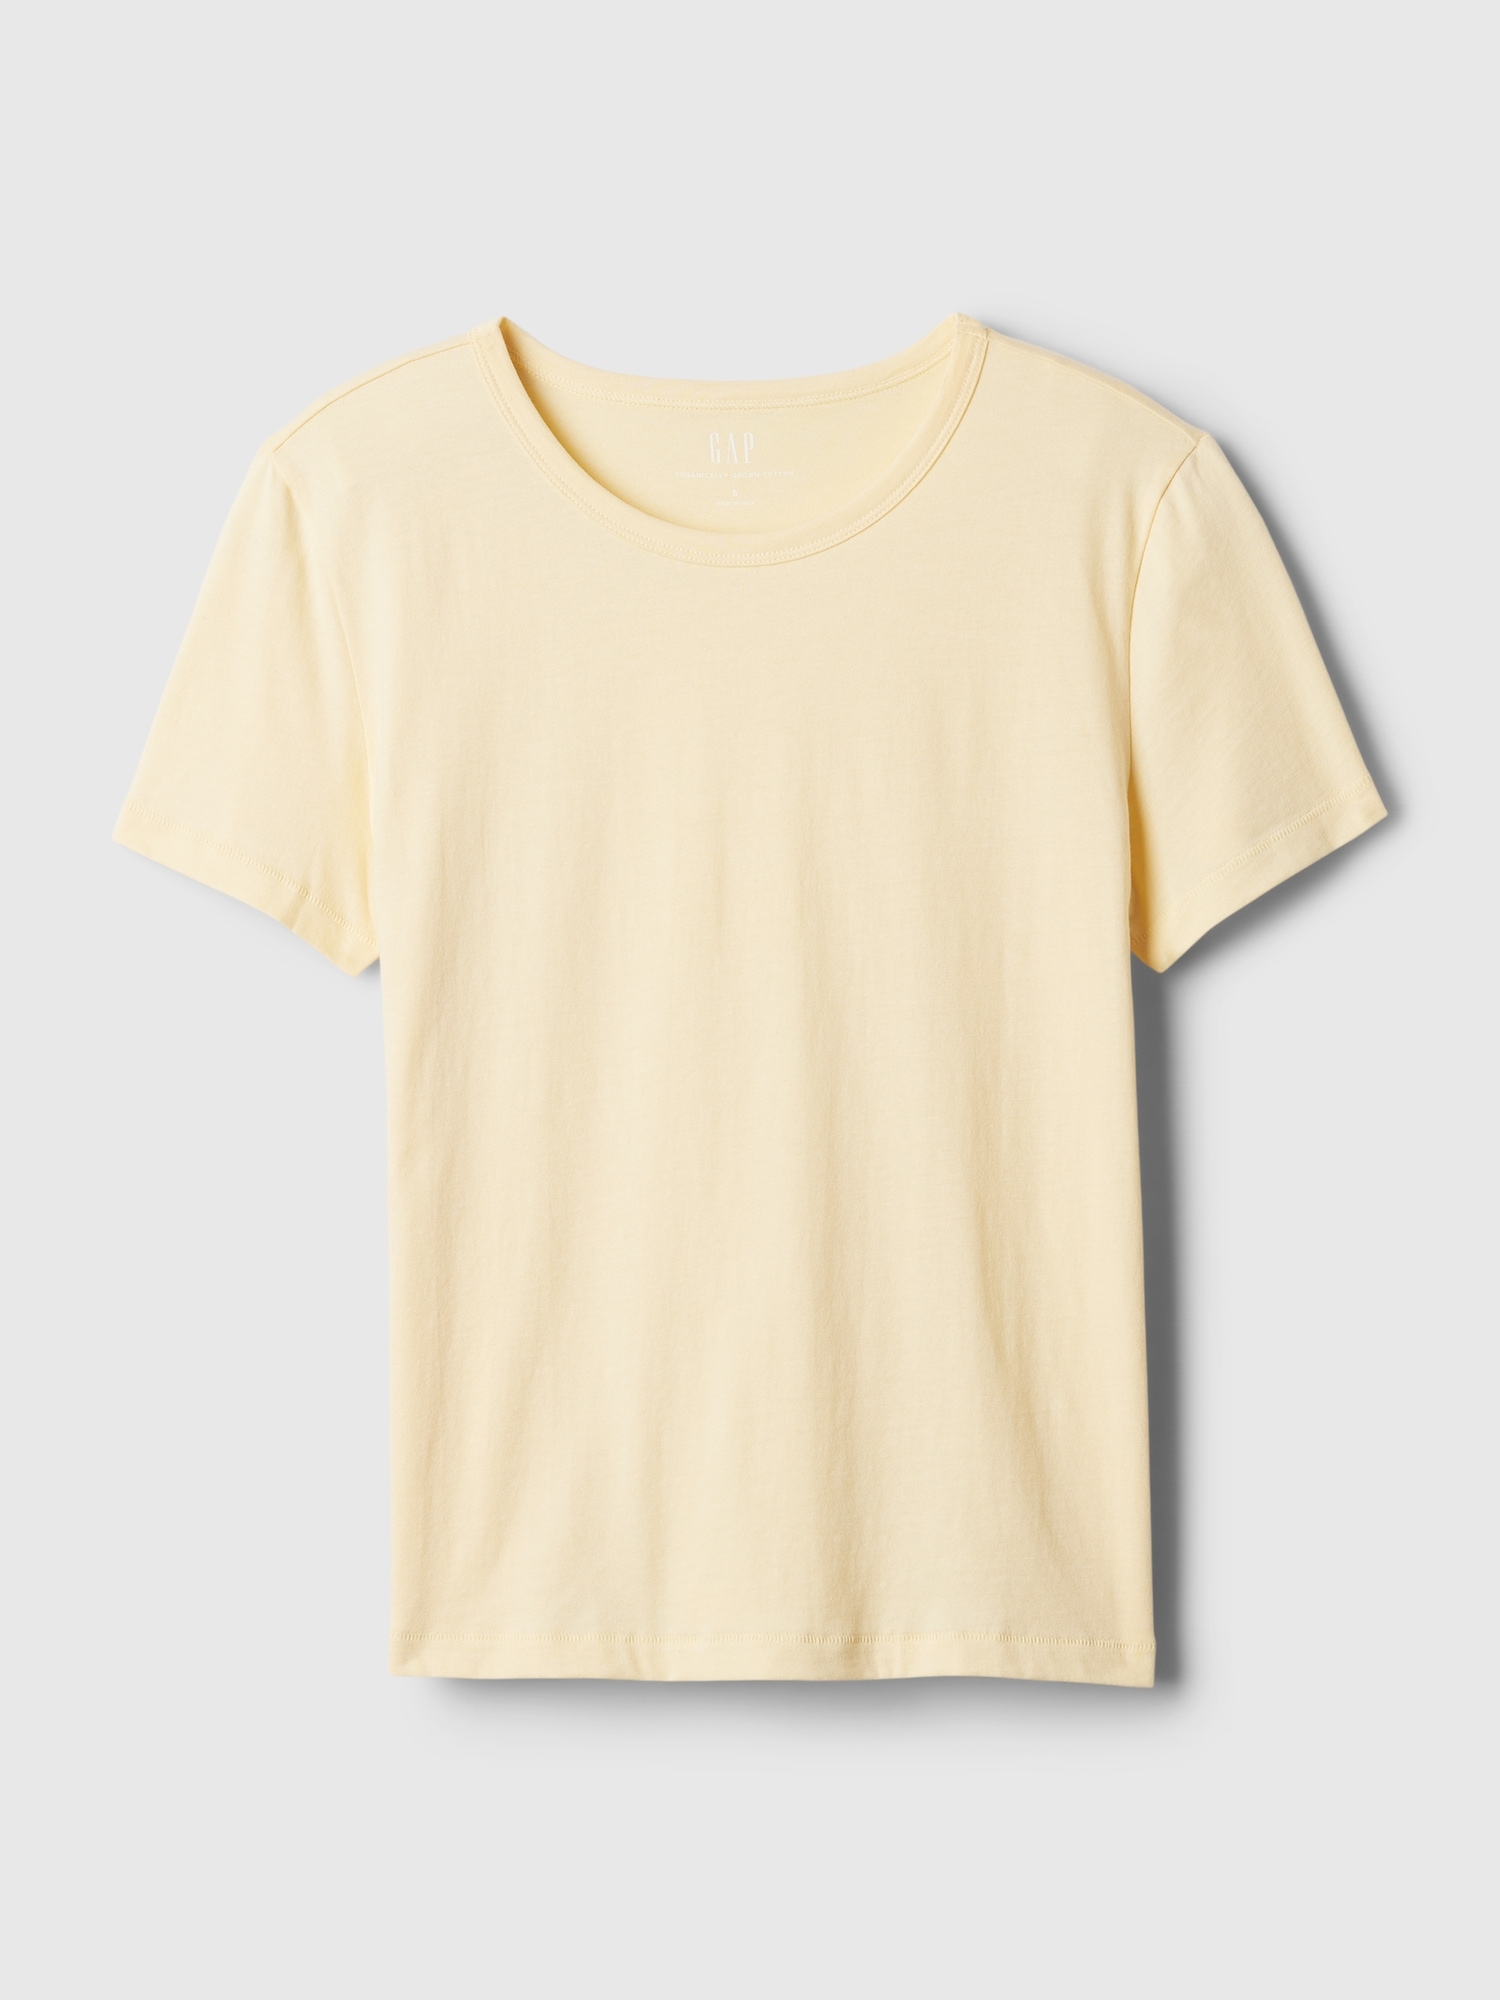 Cotton Vintage Crewneck T-Shirt